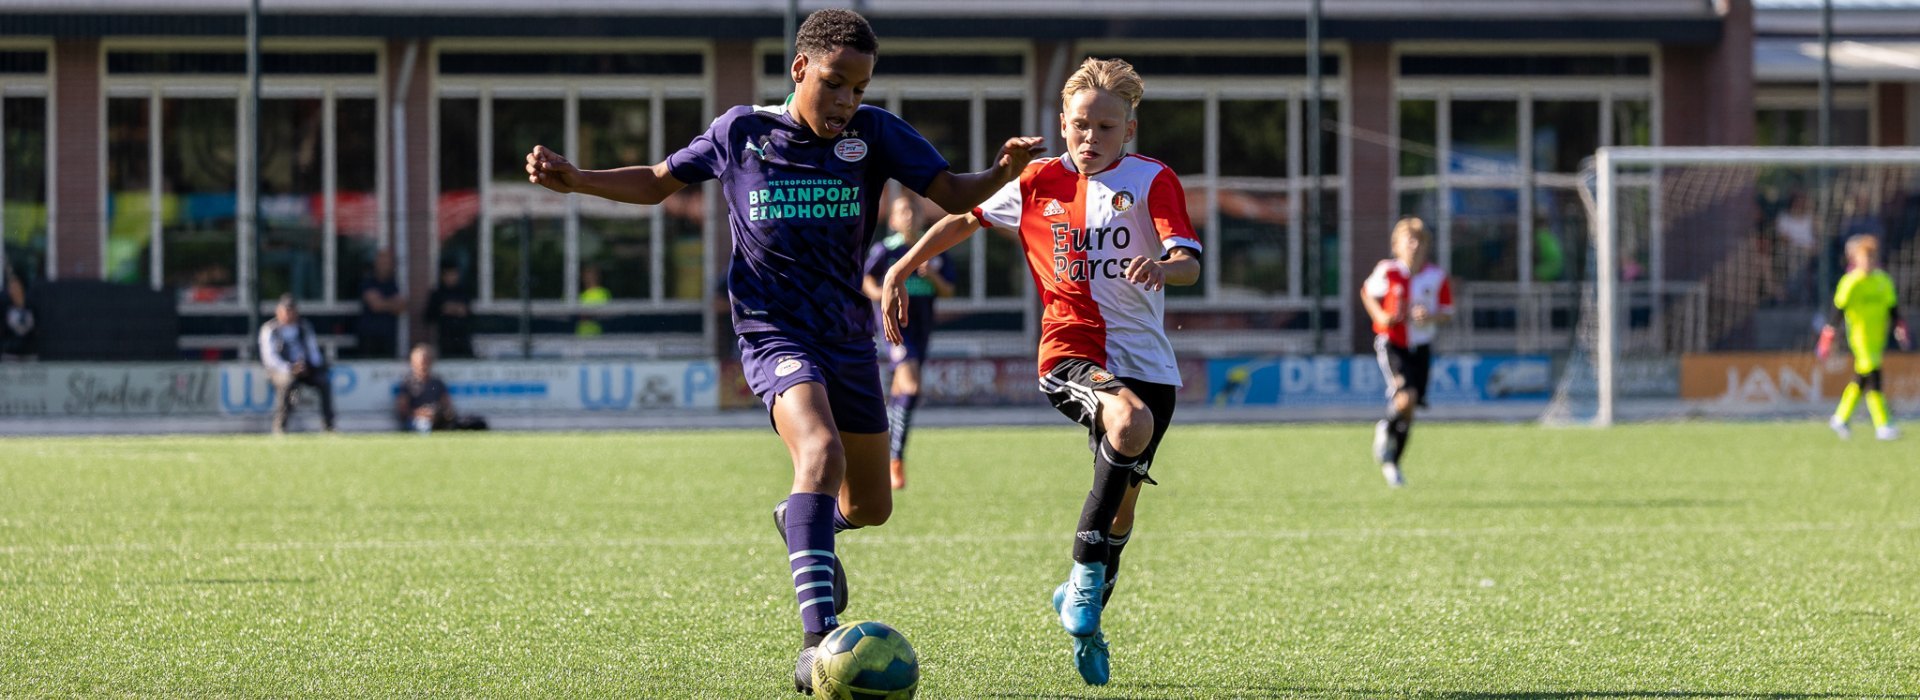 PSV wint U12-toernooi